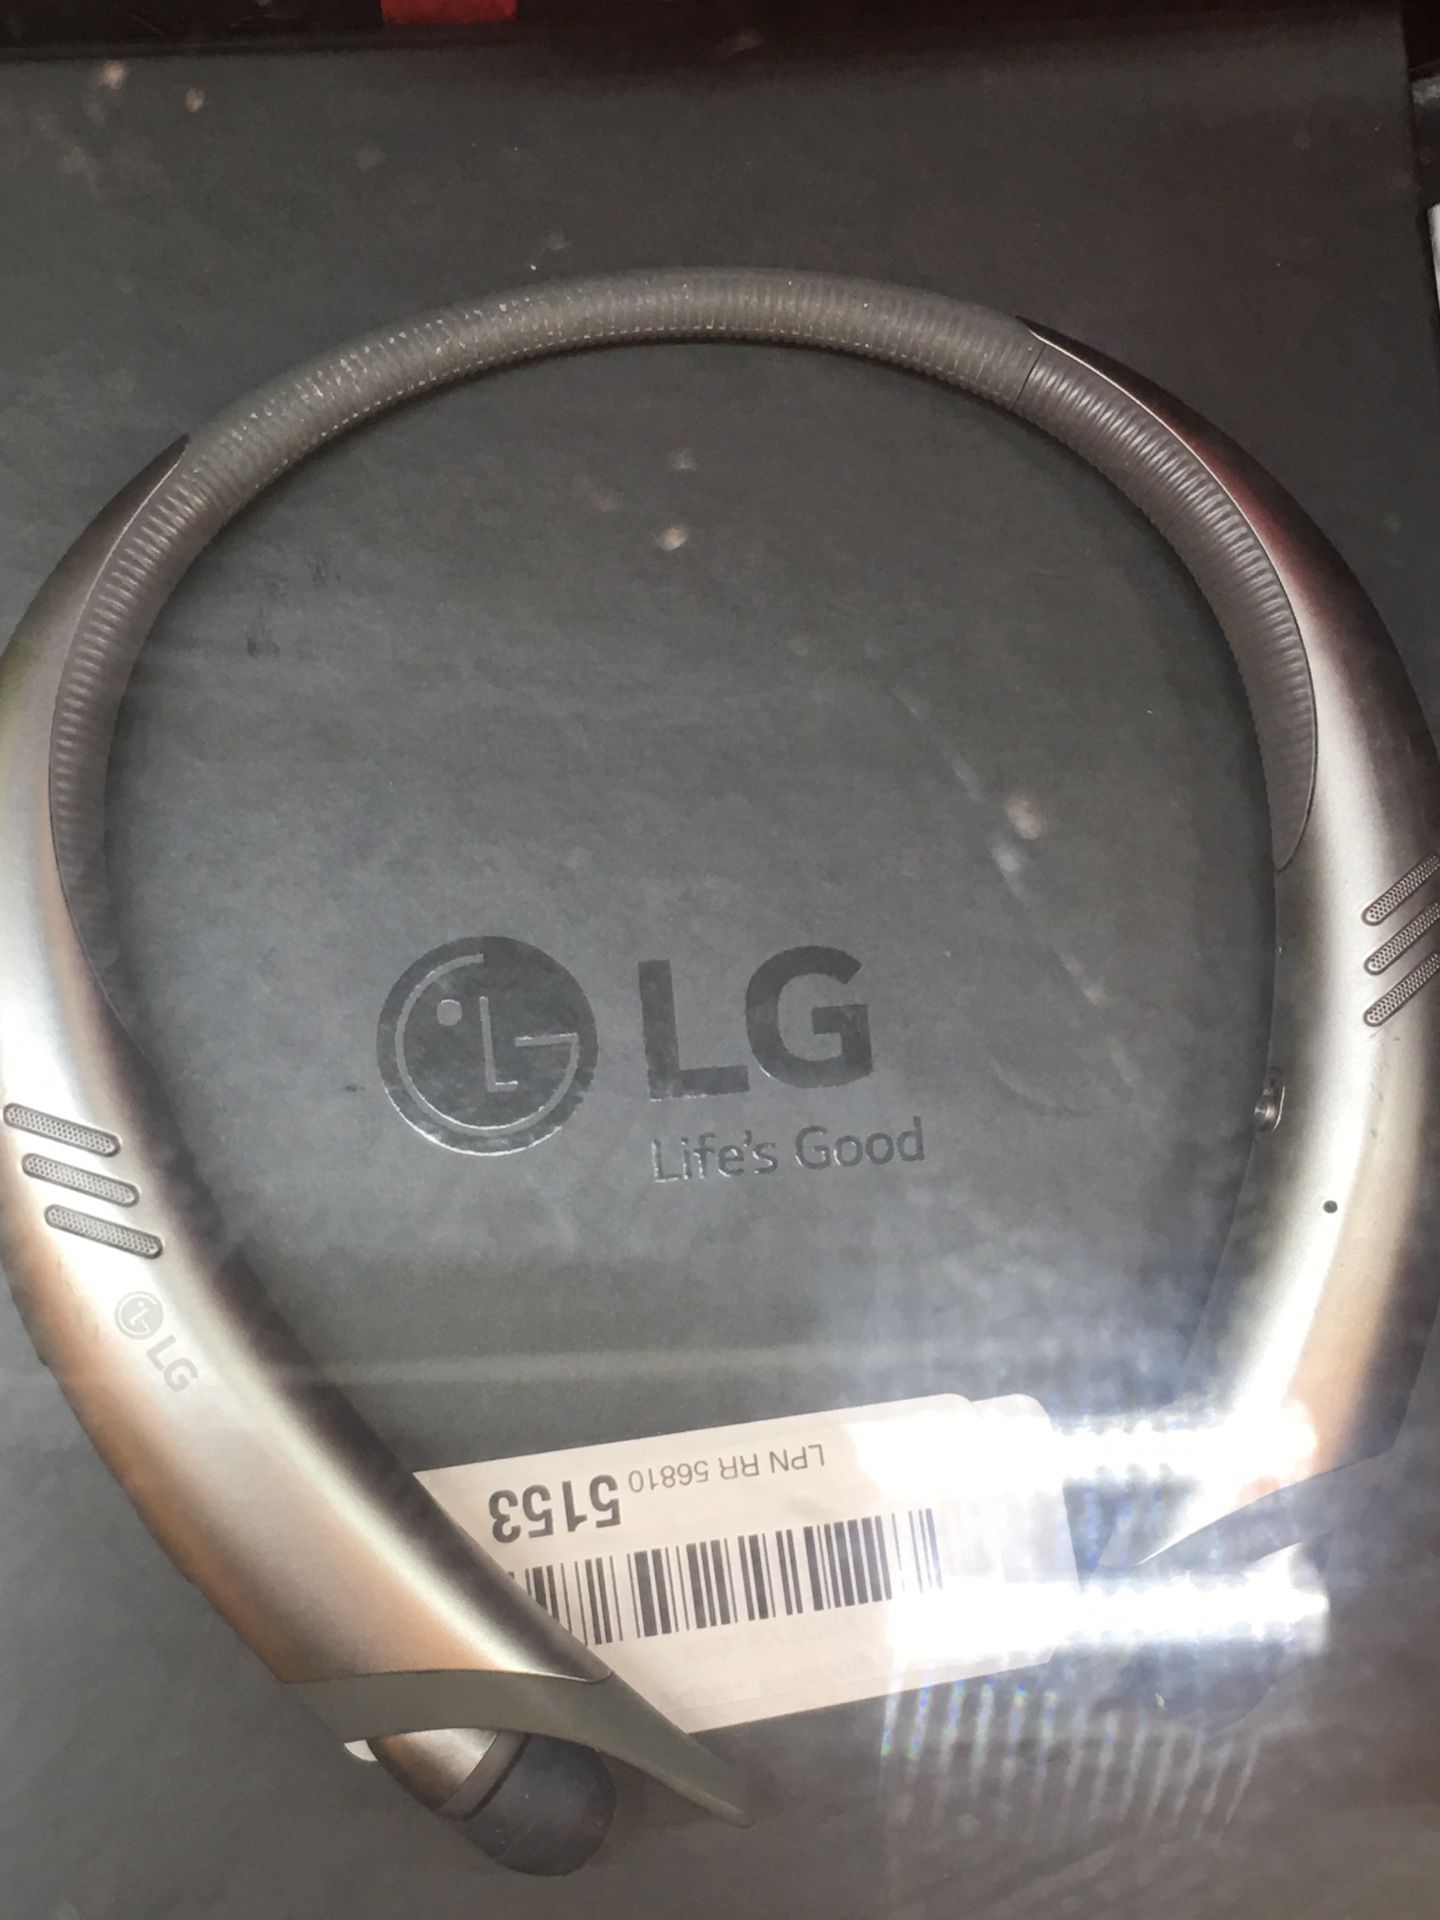 HEADPhones Bluetooth LG